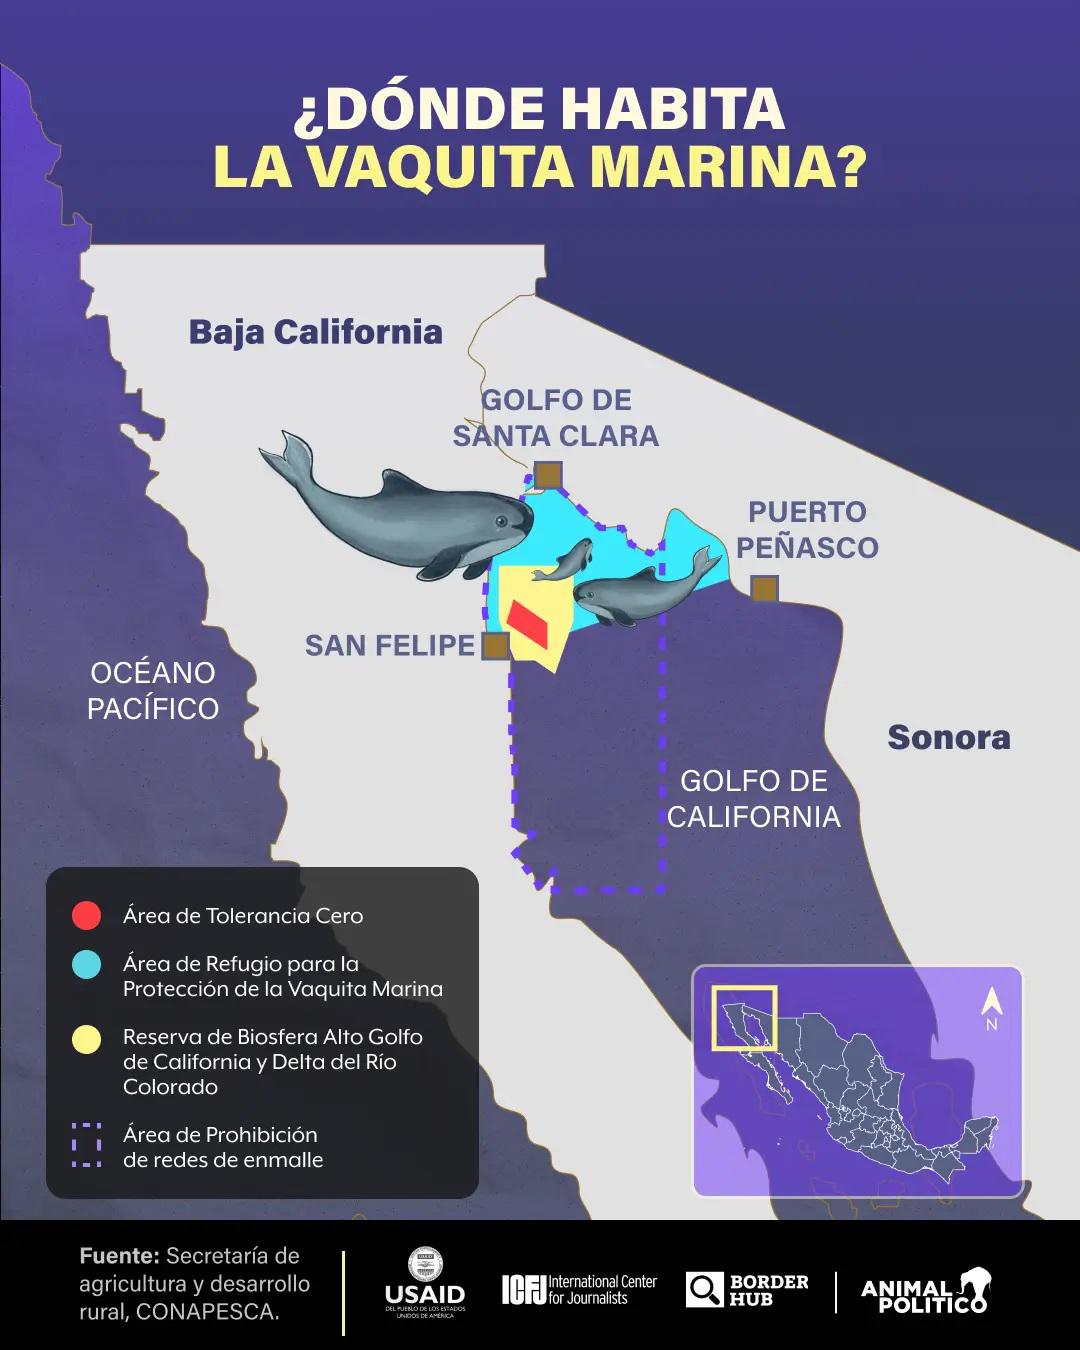 $!Gobierno de AMLO abandonó desde 2021 proyecto esencial para conservación de la vaquita marina